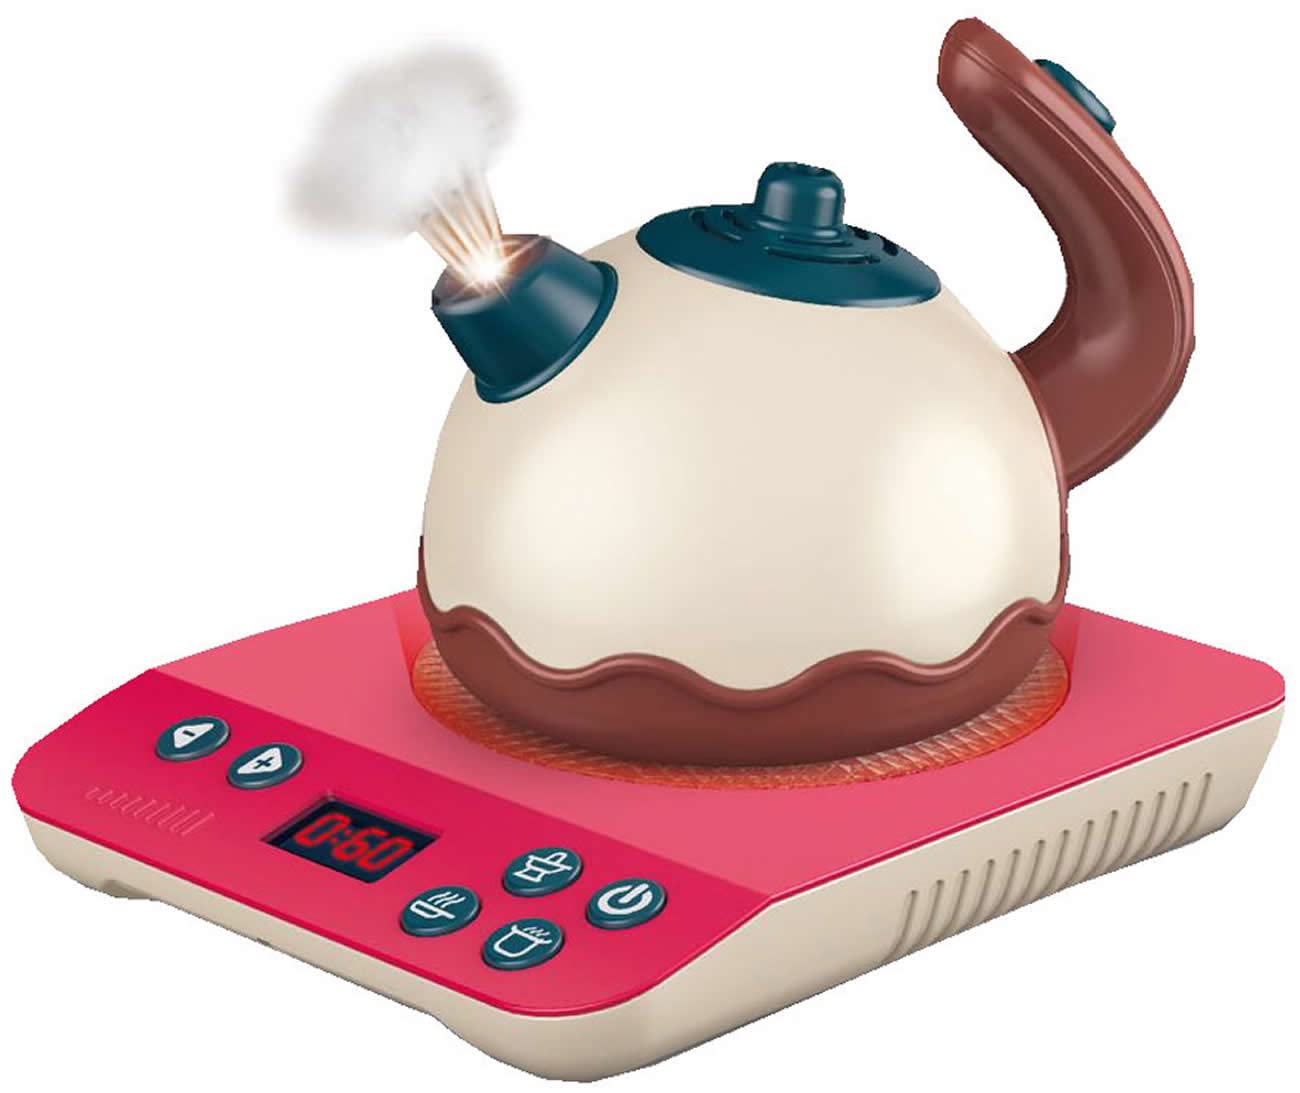 Diakakis Luna Spielküchen-Set Wasserkocher Ceran-Kochplatte m. Funktion Licht und Sound